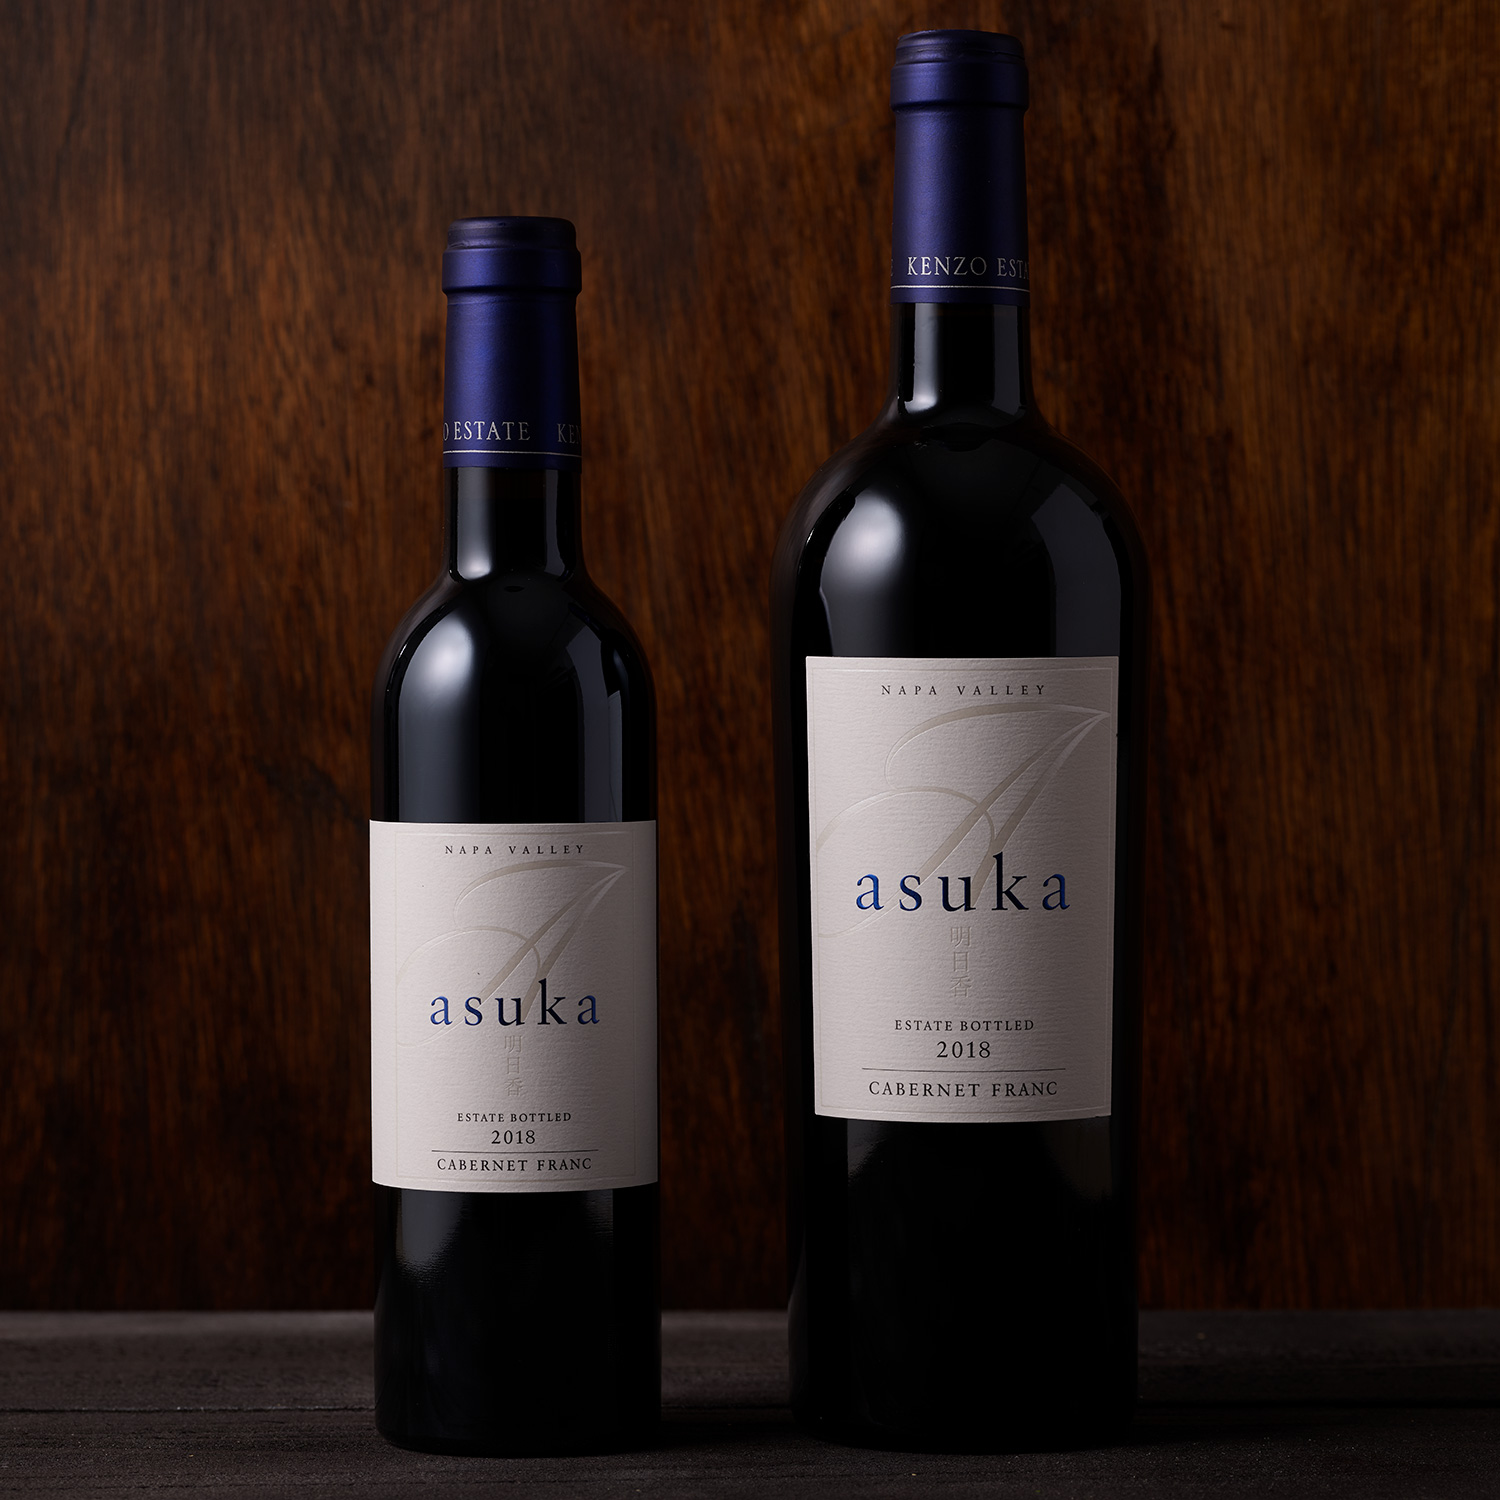 新作登場低価asuka KENZO ESTATE ワイン2020 375ml 2本セット ワイン